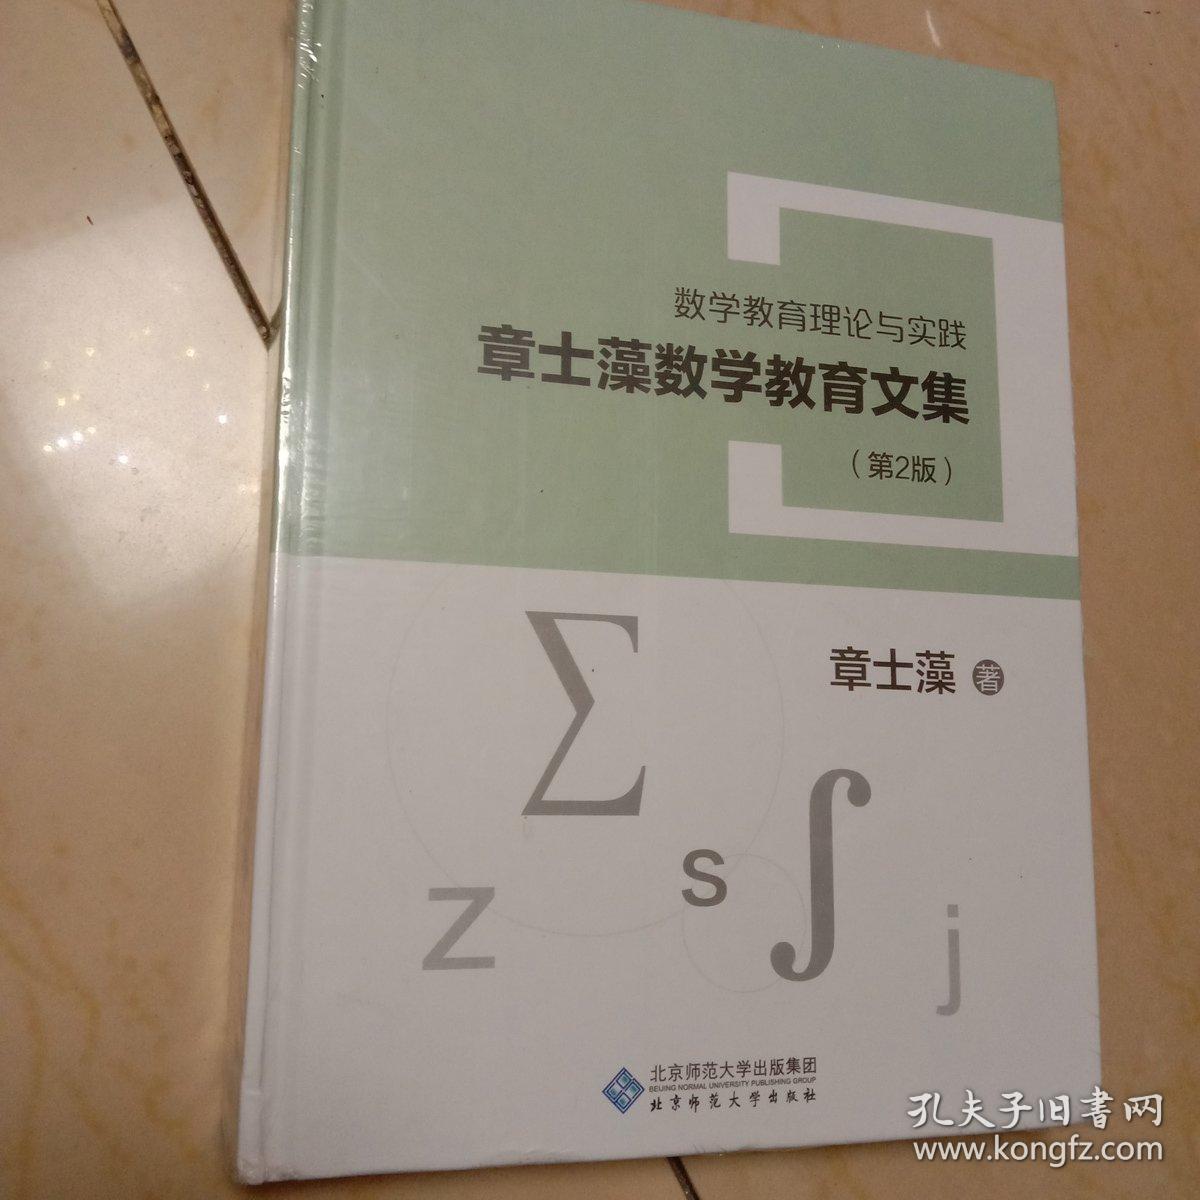 章士藻数学教育文集(第二版)